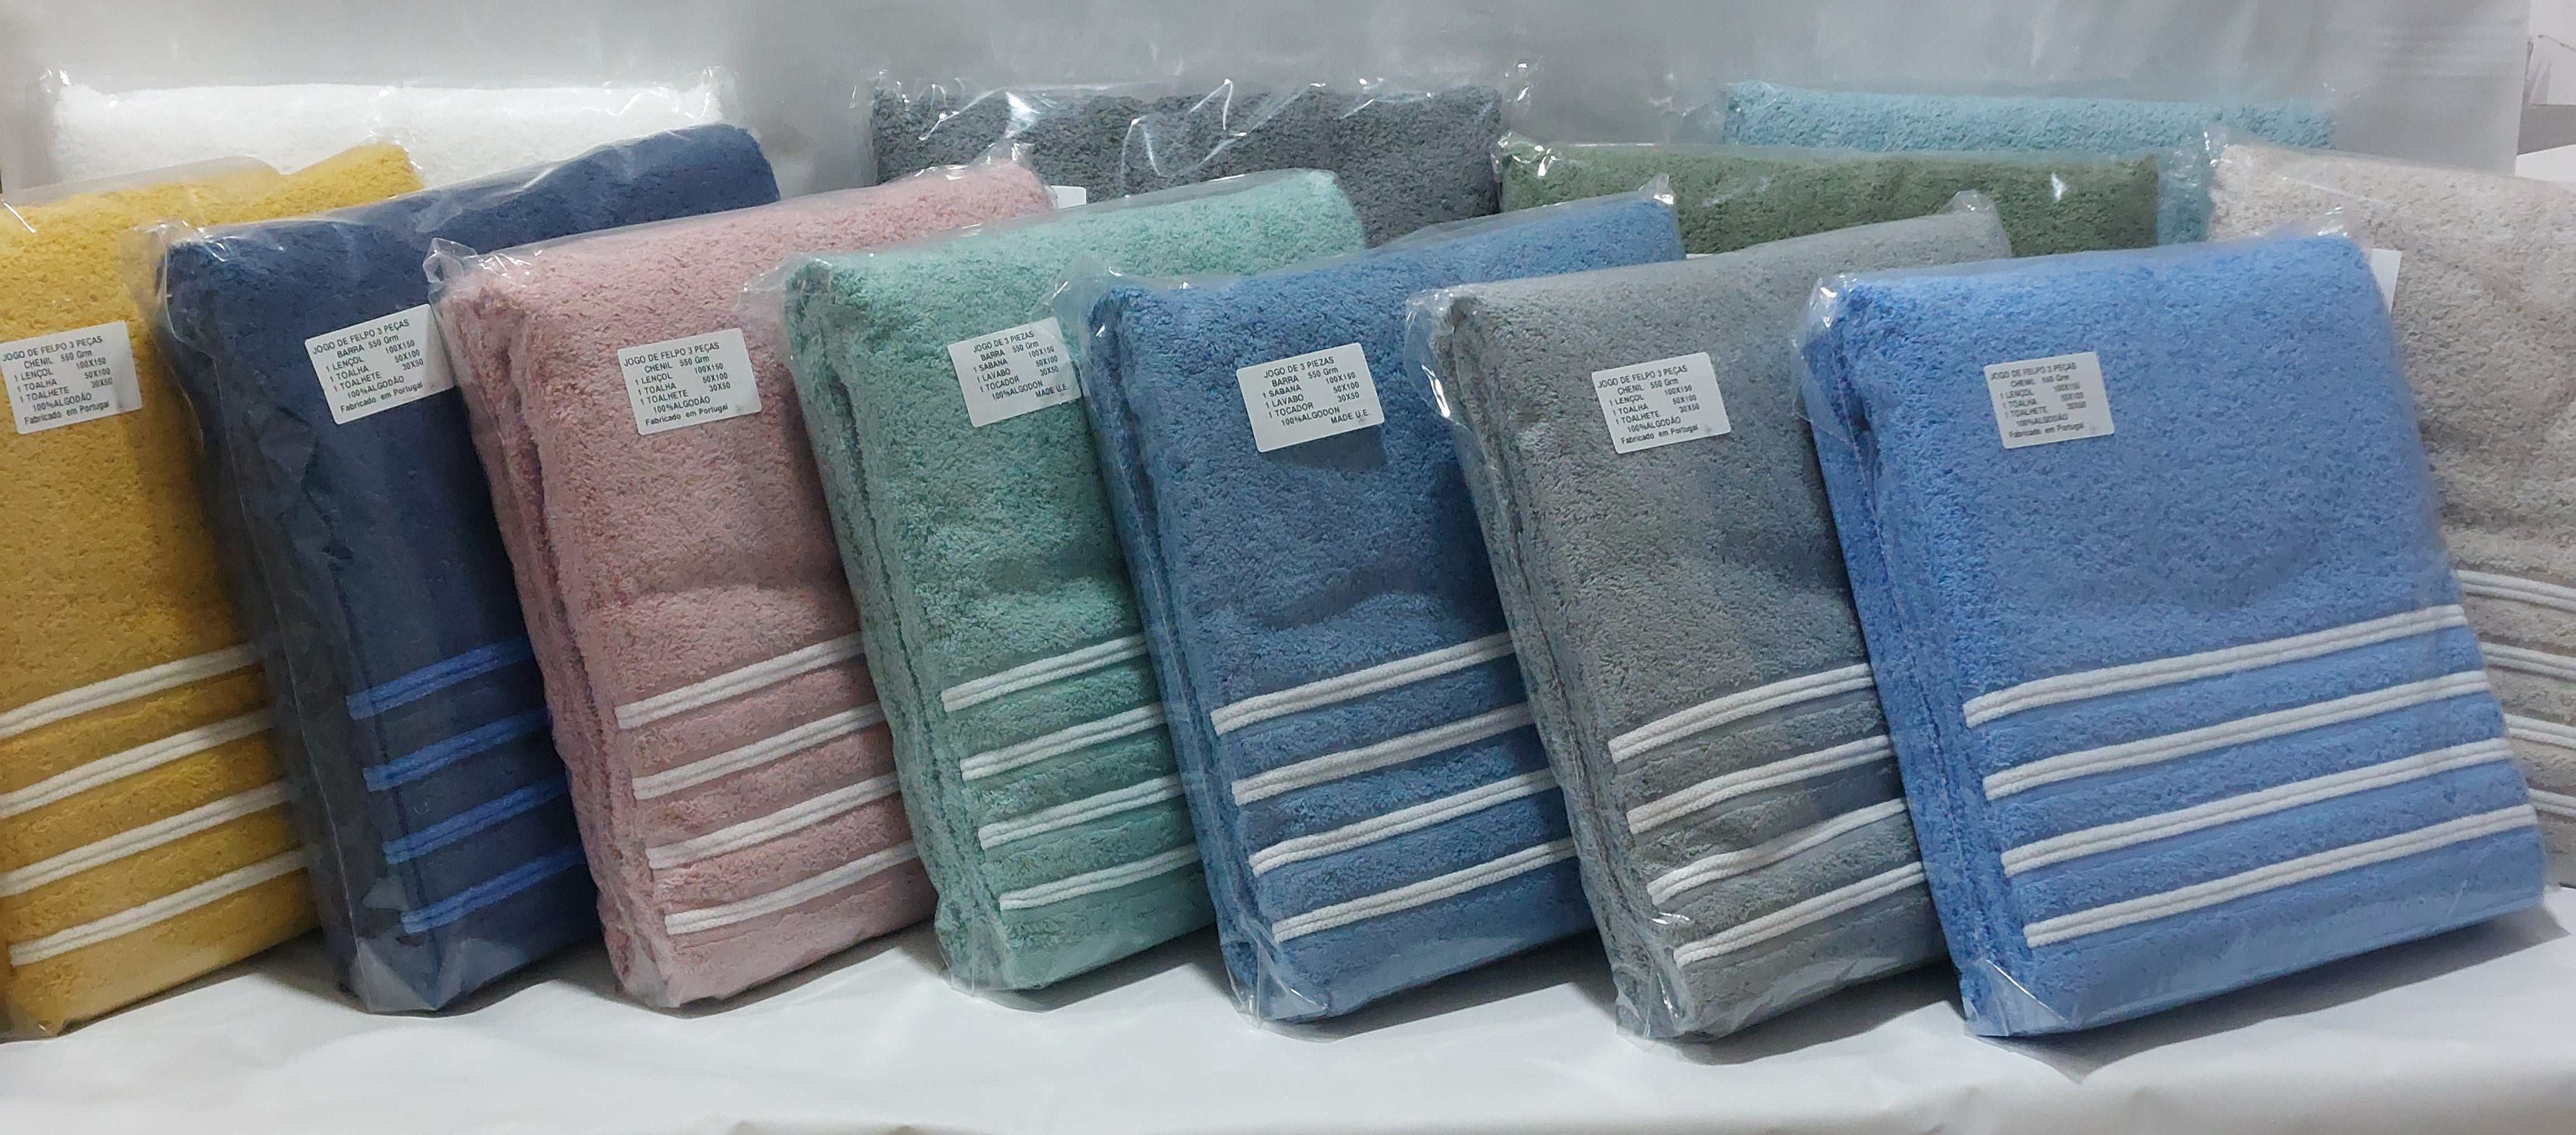 Toallas de Baño Online |Juego de toallas Textil baño | Toallas azul pastel 